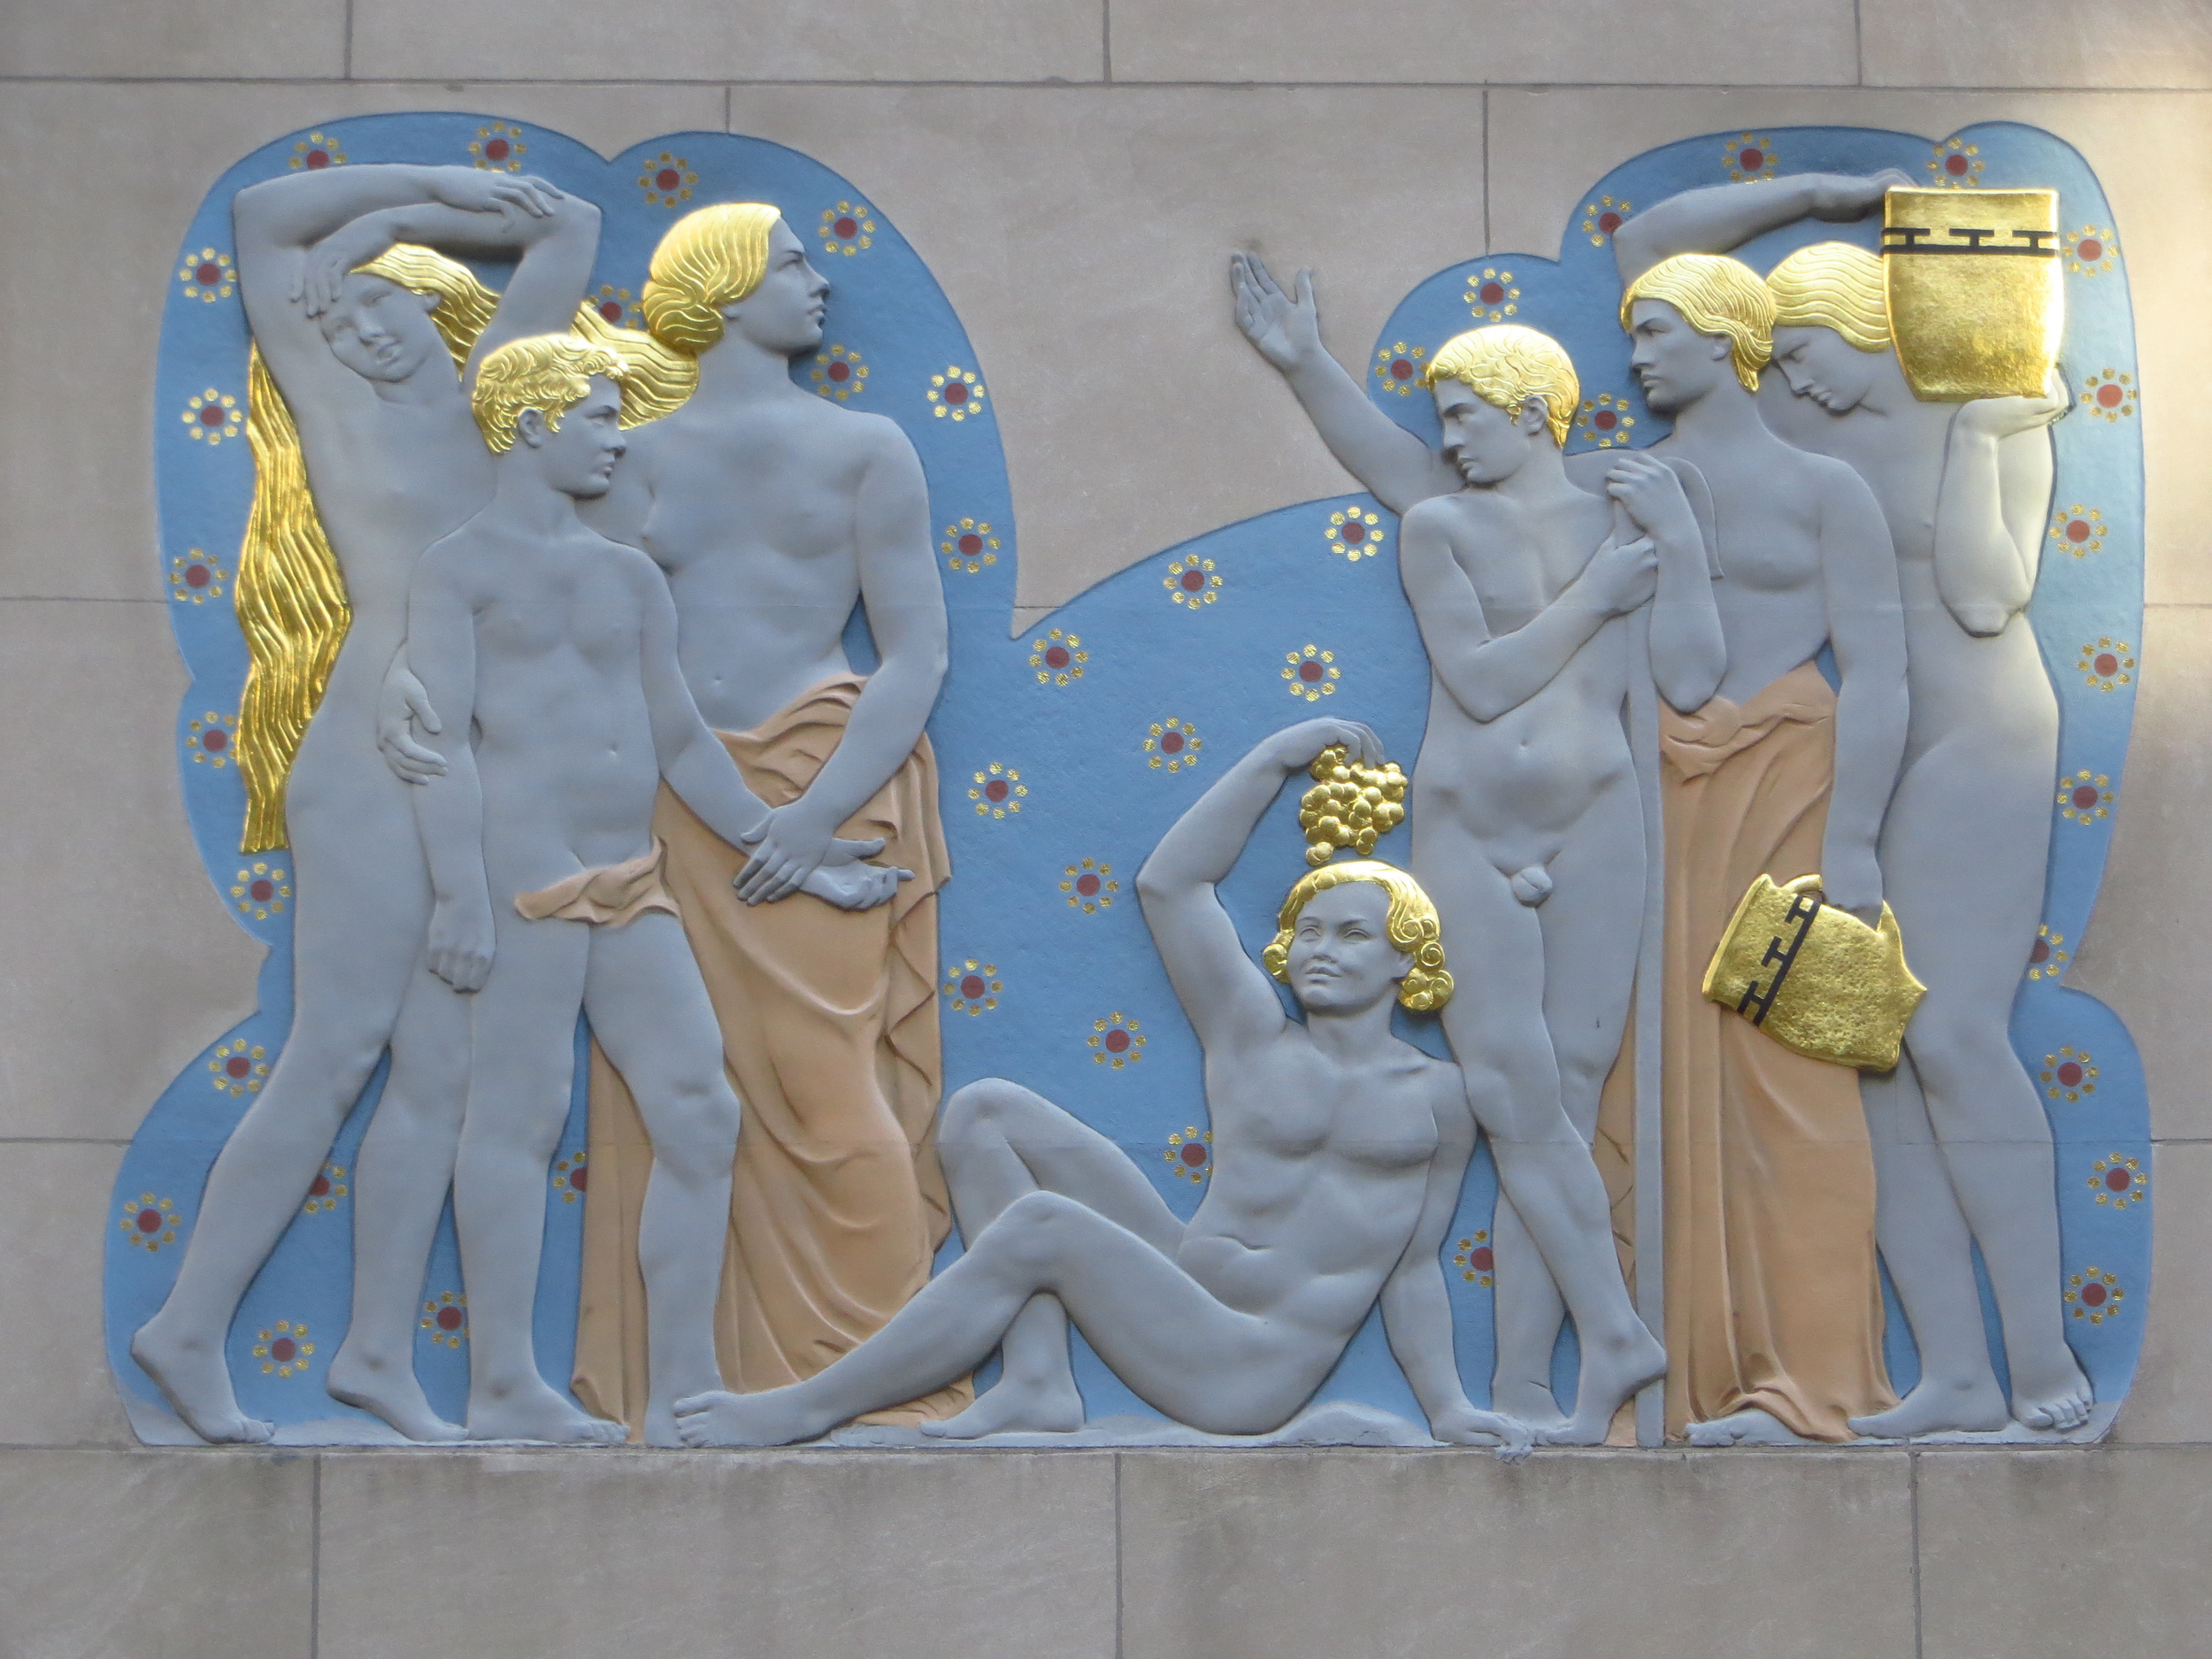 Rockefeller Center bas relief